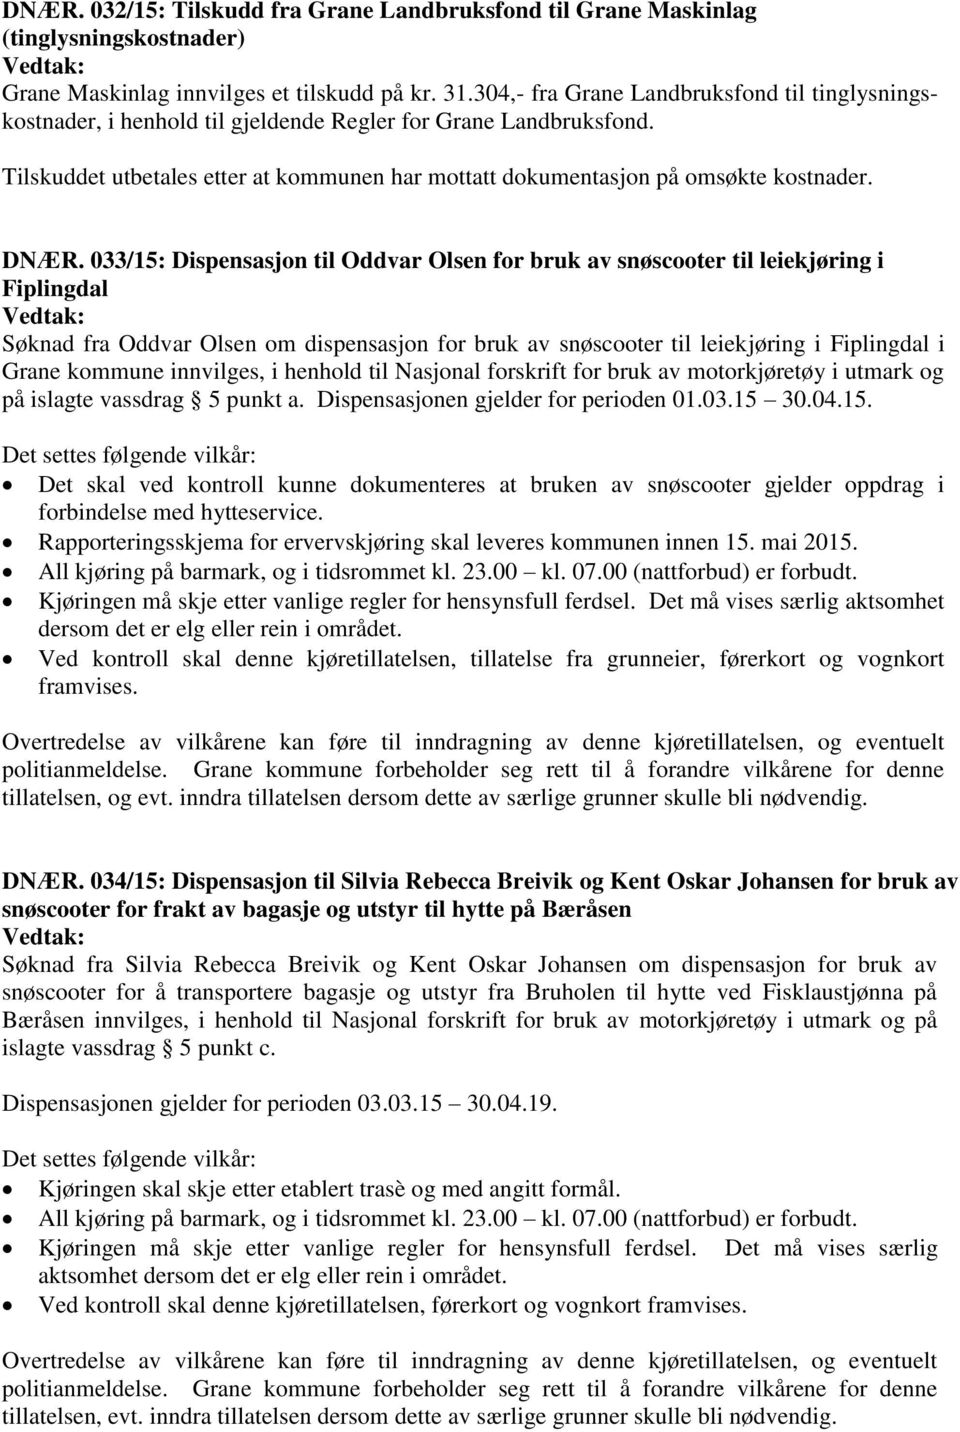 DNÆR. 033/15: Dispensasjon til Oddvar Olsen for bruk av snøscooter til leiekjøring i Fiplingdal Søknad fra Oddvar Olsen om dispensasjon for bruk av snøscooter til leiekjøring i Fiplingdal i Grane